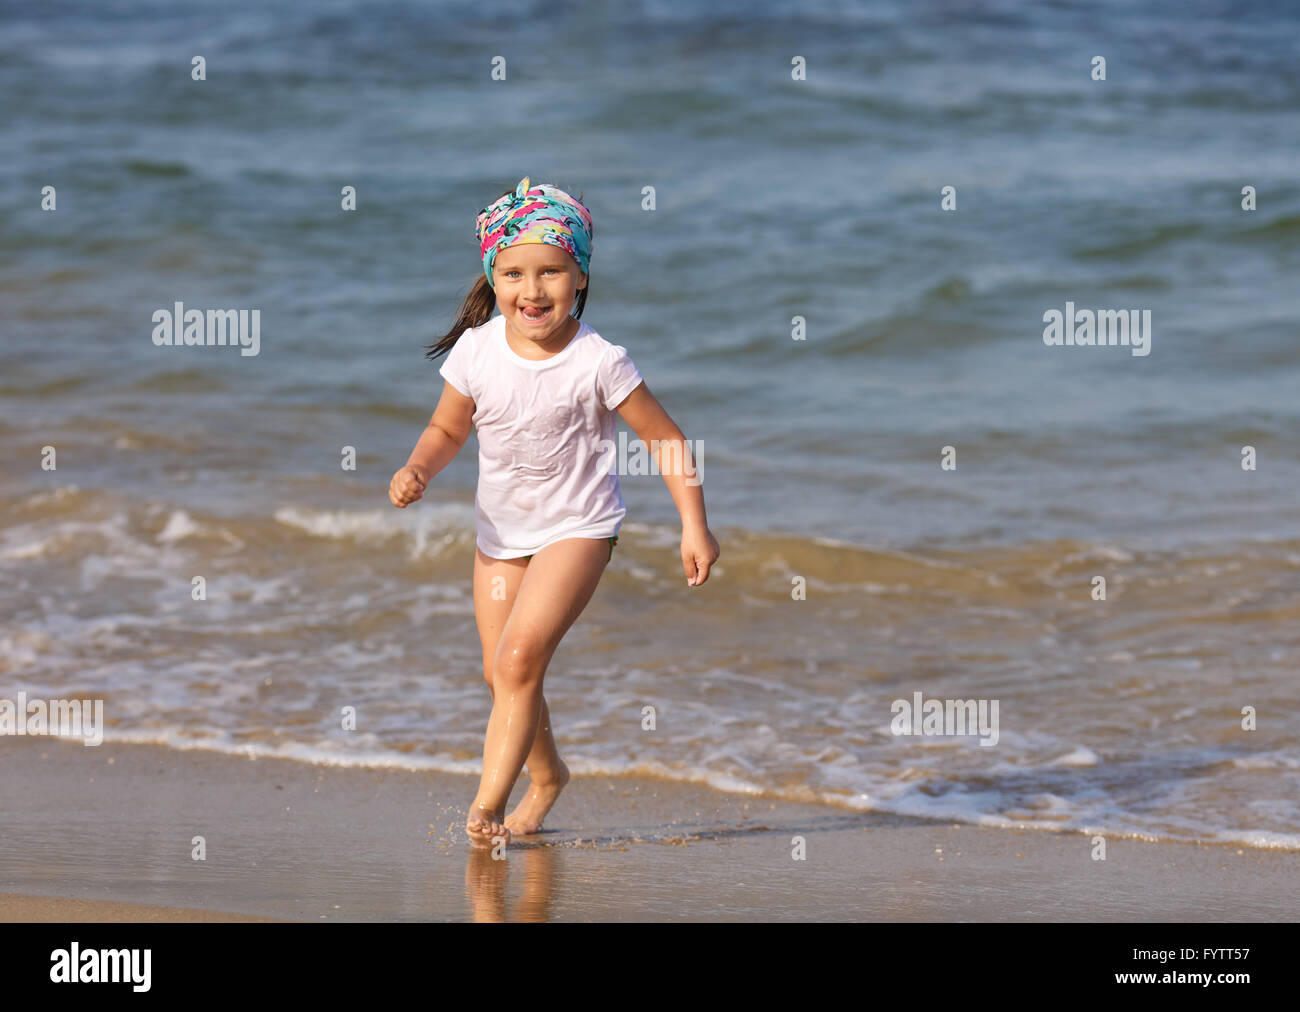 за голыми детьми на пляже фото 21